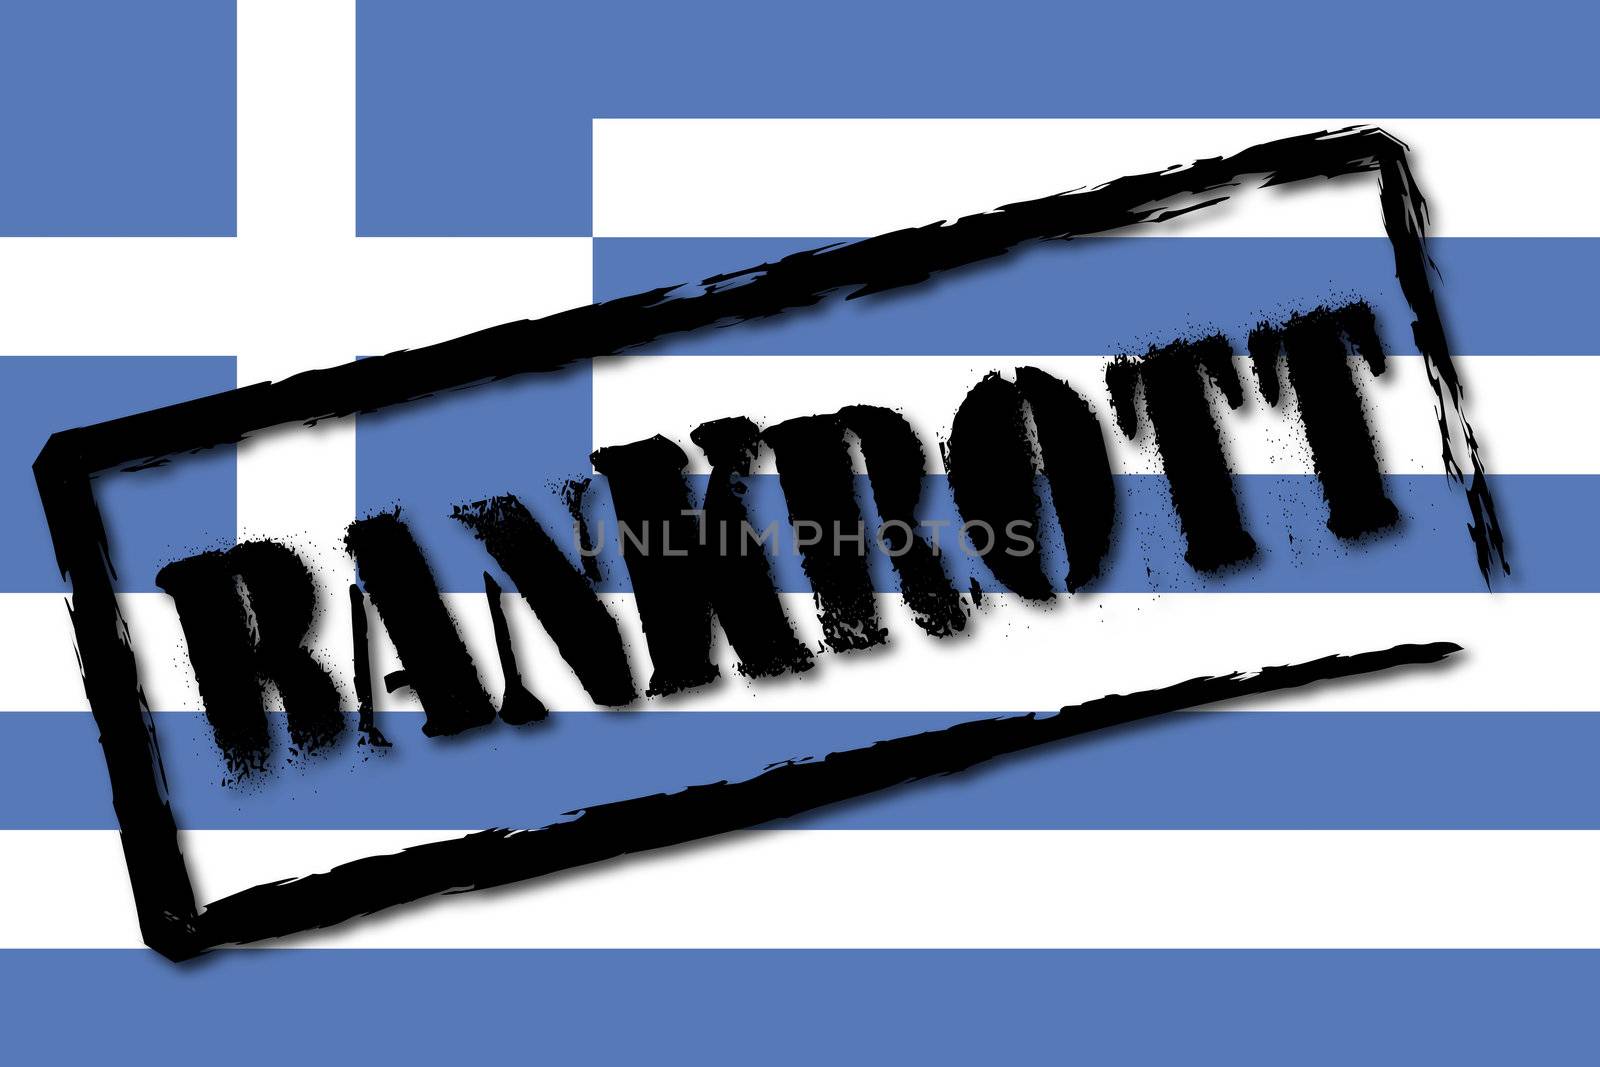 Flag of Greece - German Rubber Stamp bankrupt